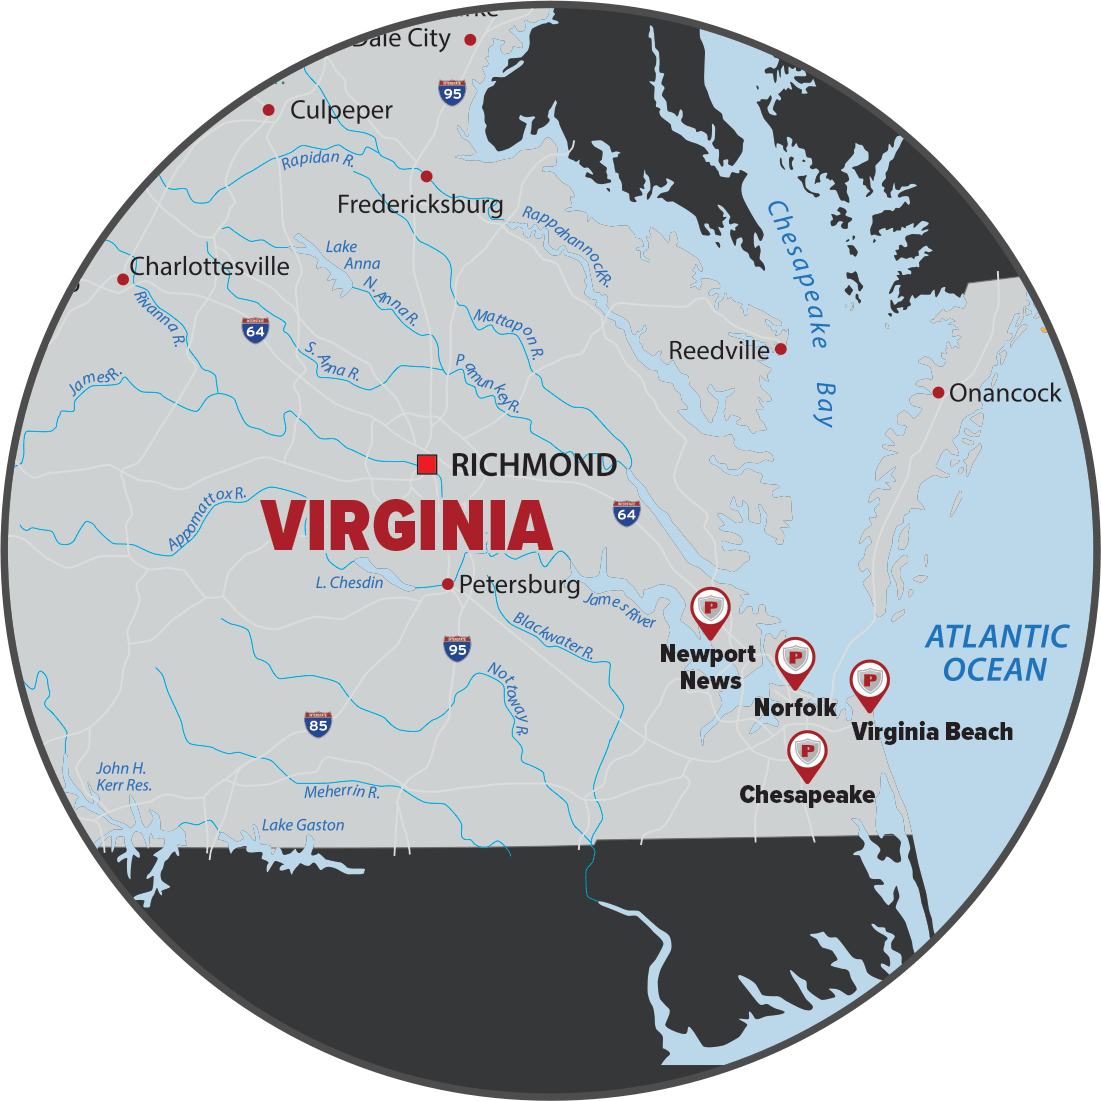 Virginia Service Area